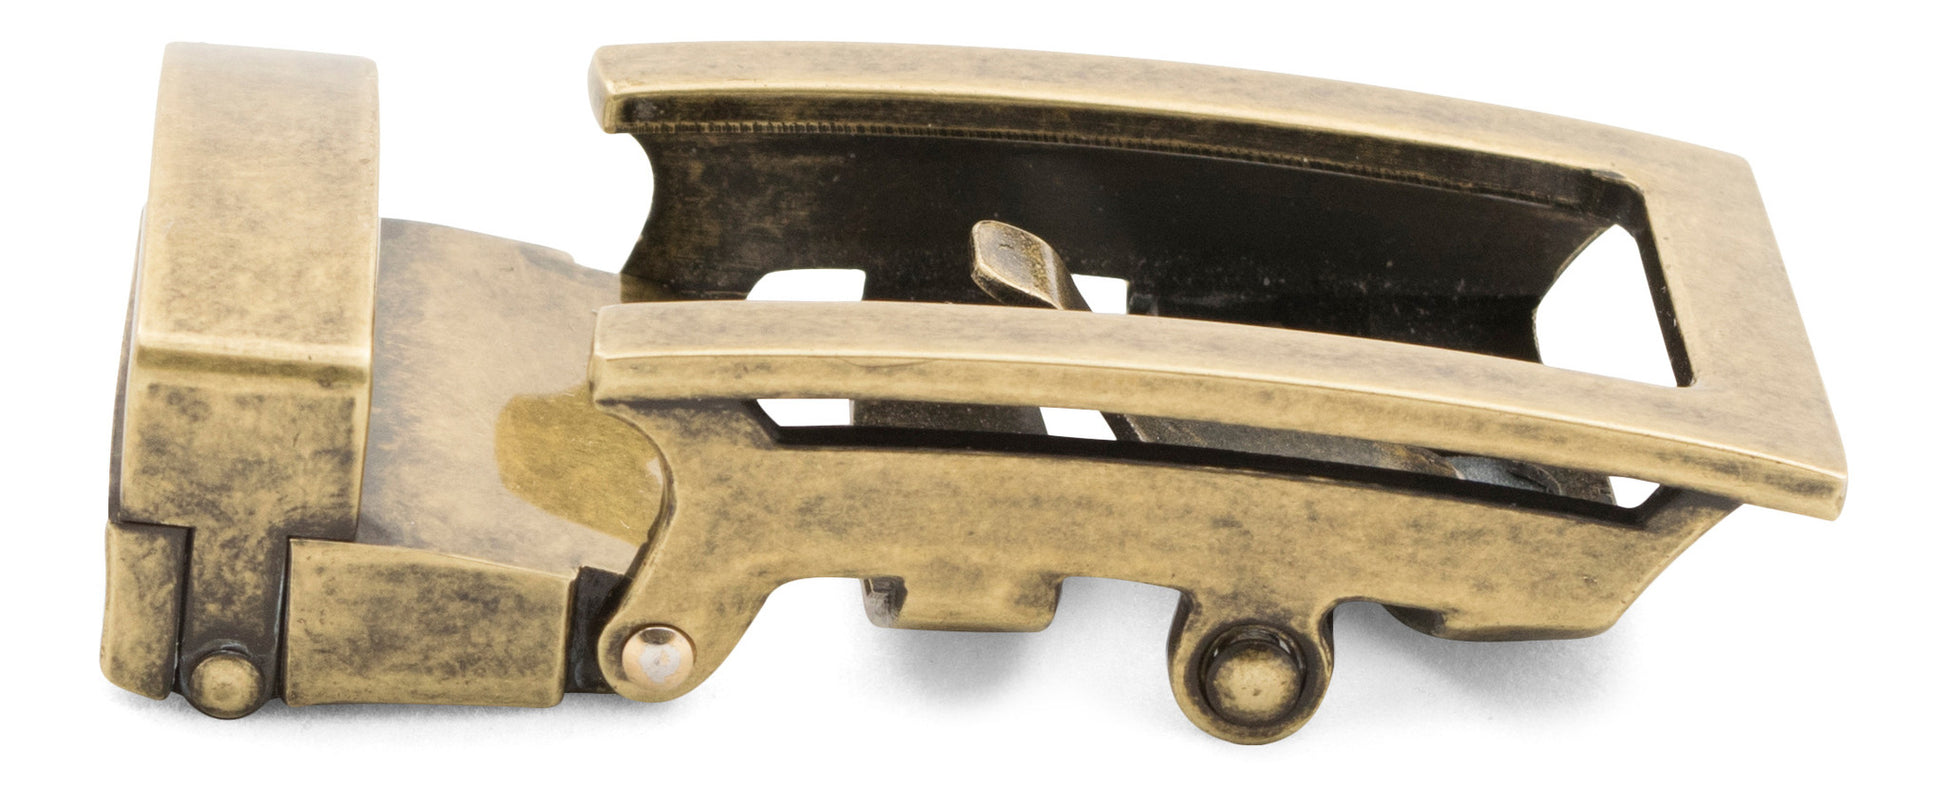 Traditional Belt Buckle - Men's Ratchet Belt - Antiqued Gold, 1.5